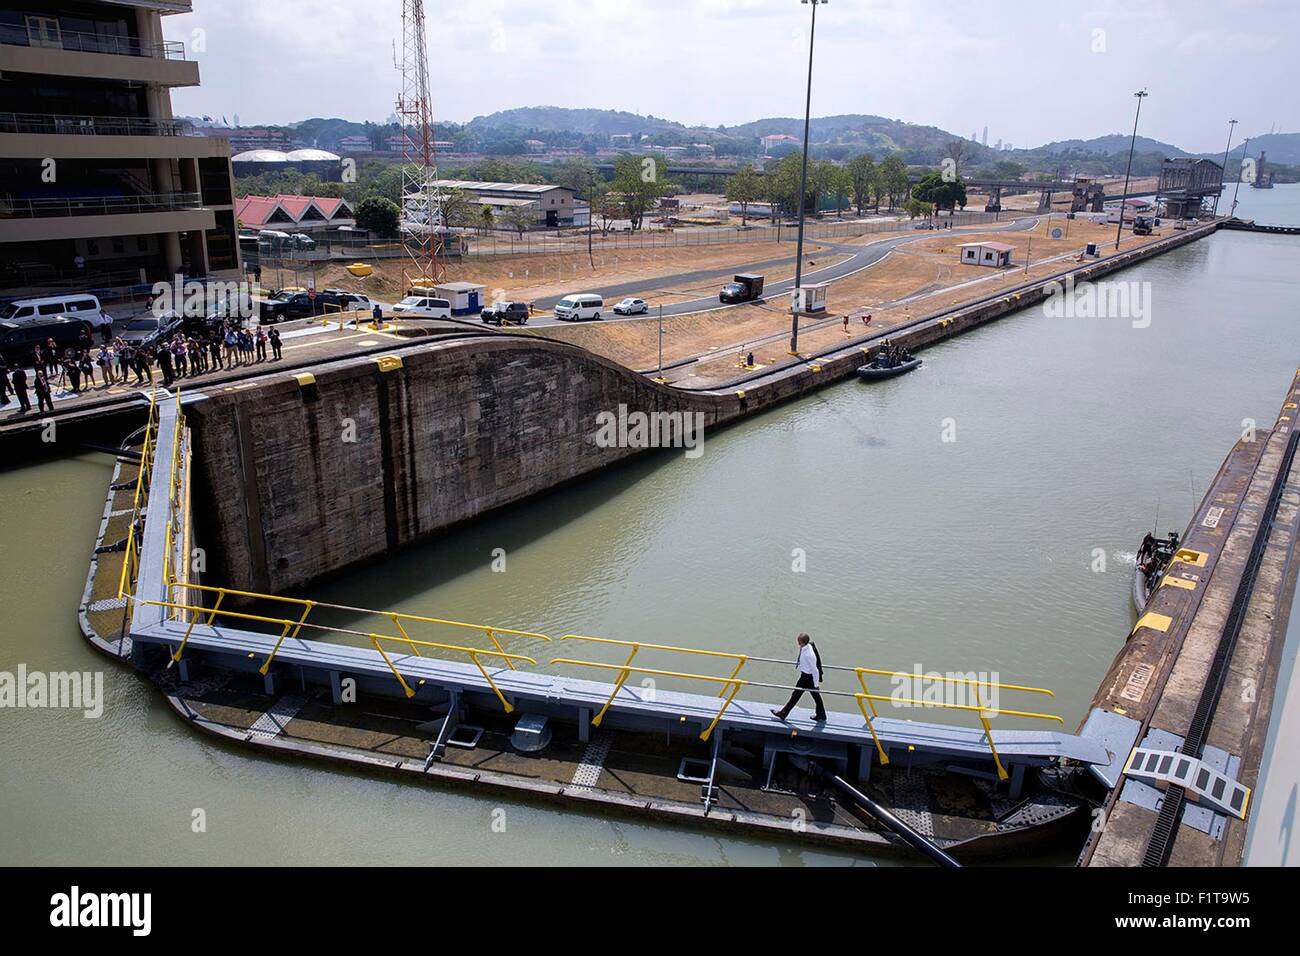 US-Präsident Barack Obama geht durch eine Sperre nach einer Tour durch den Kontrollturm am Panamakanal Miraflores Locks 10. April 2015 in Ancon, Panama. Stockfoto